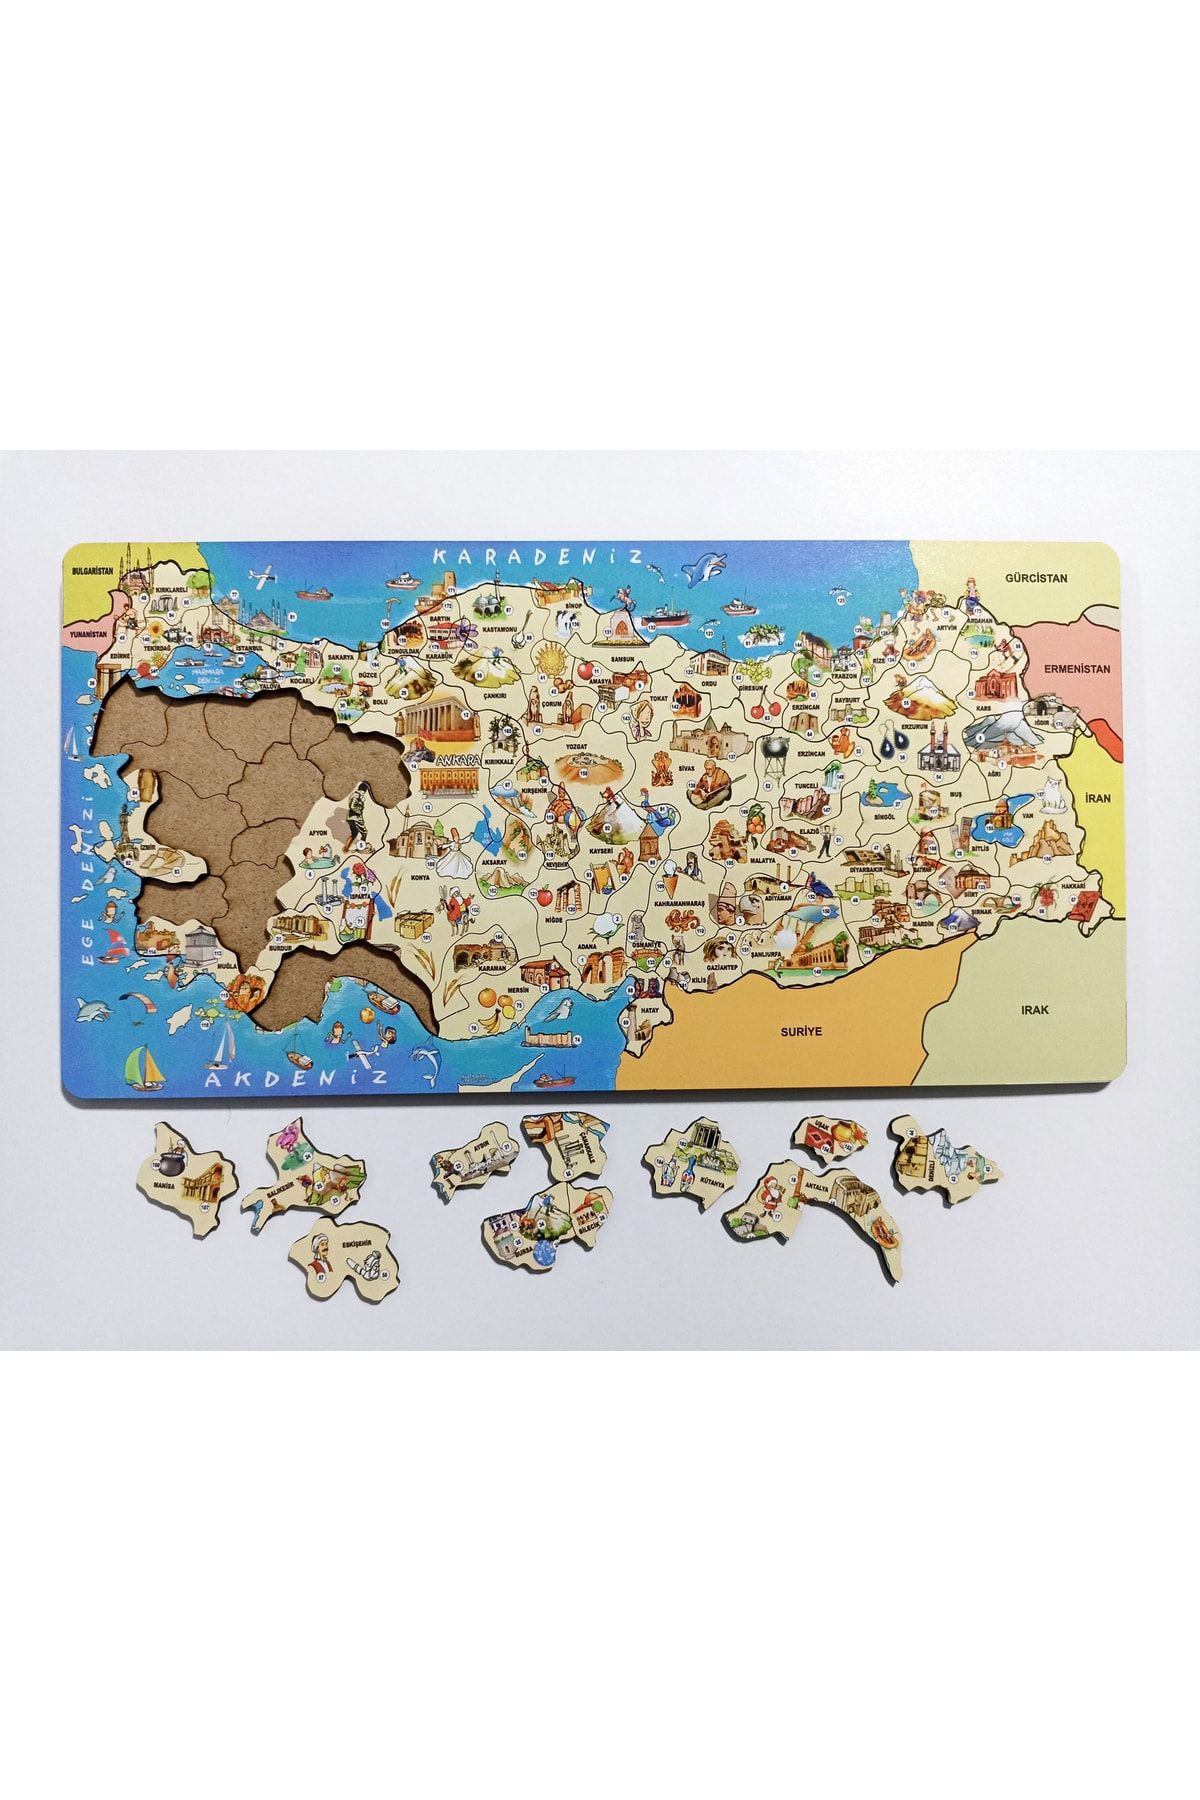 mevaks Ahşap Türkiye Kültür Haritası Puzzle, Eğitici Ülkemizi Tanıyalım Yapboz